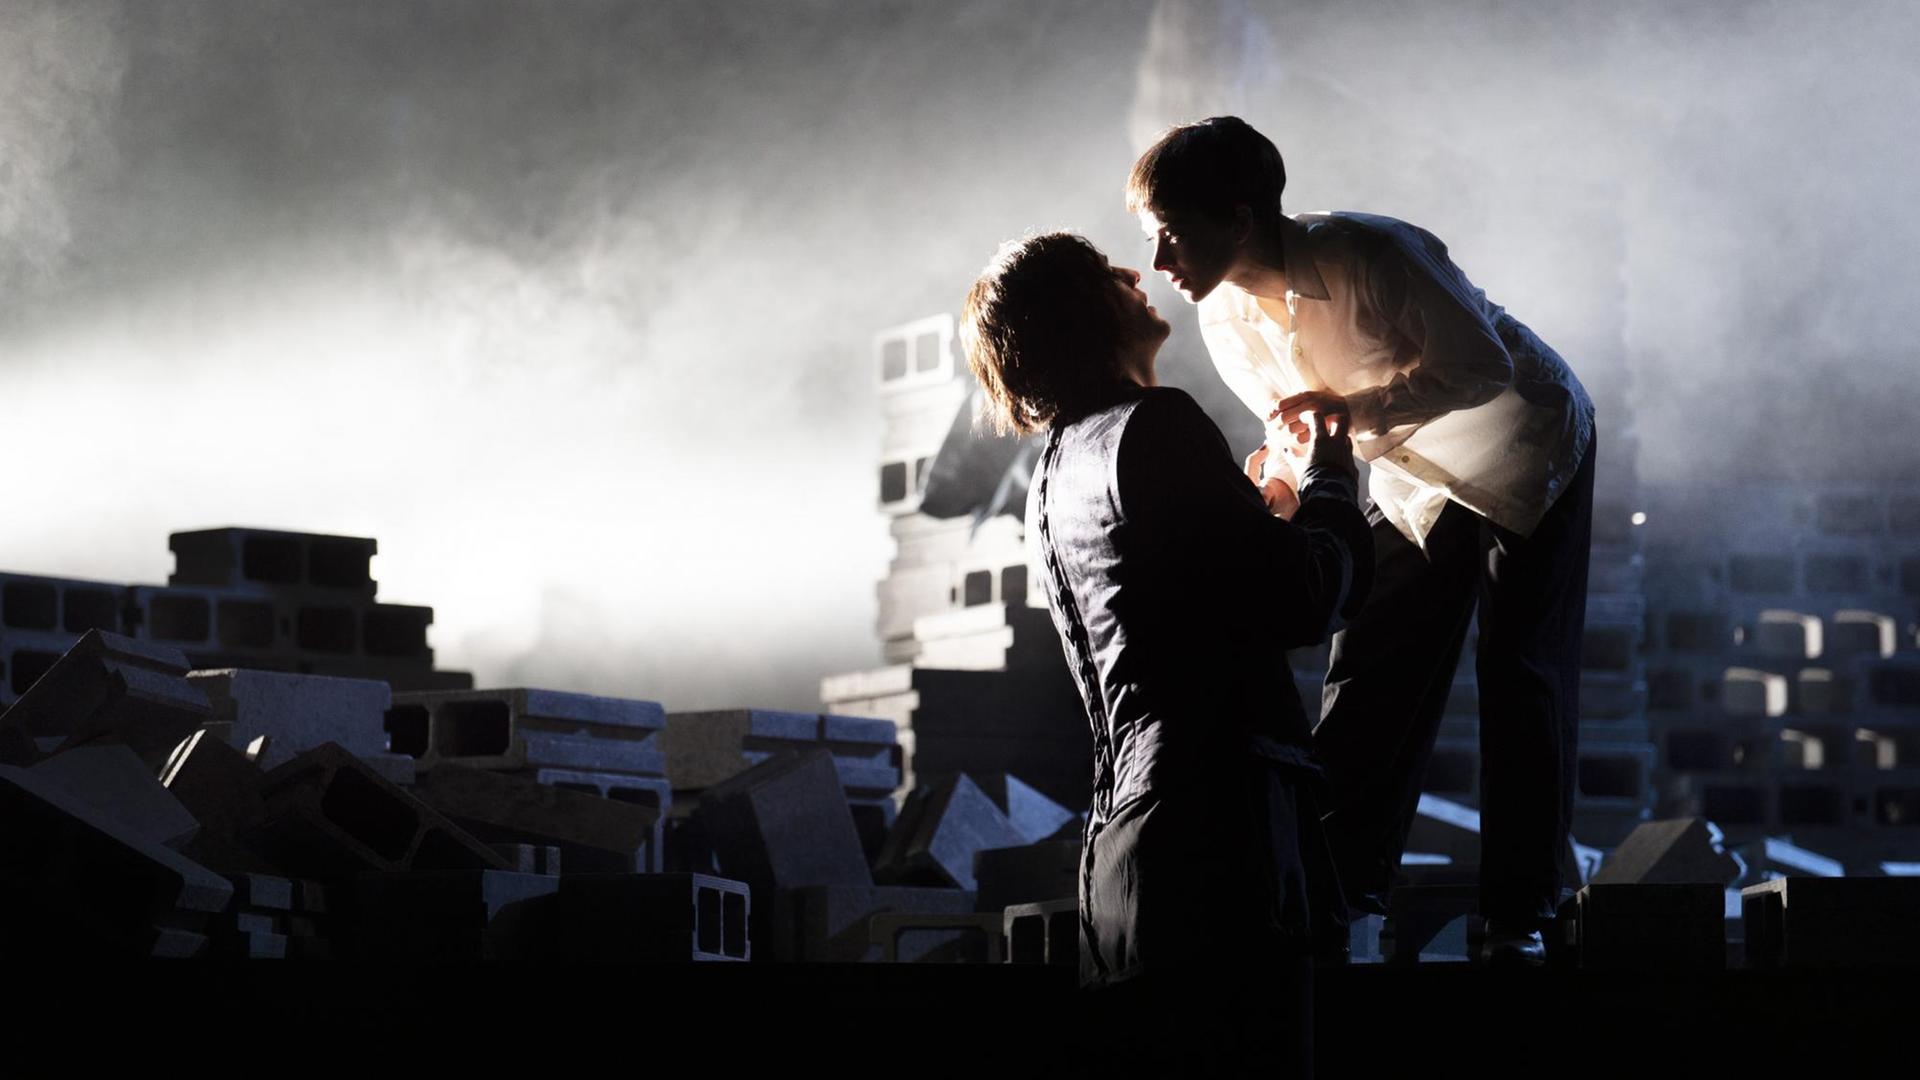 Auf einer Bühne, auf der sich Steine stapeln, stehen zwei Personen, ihre Gesichter zueinander geneigt, als würden sie sich gleich küssen.